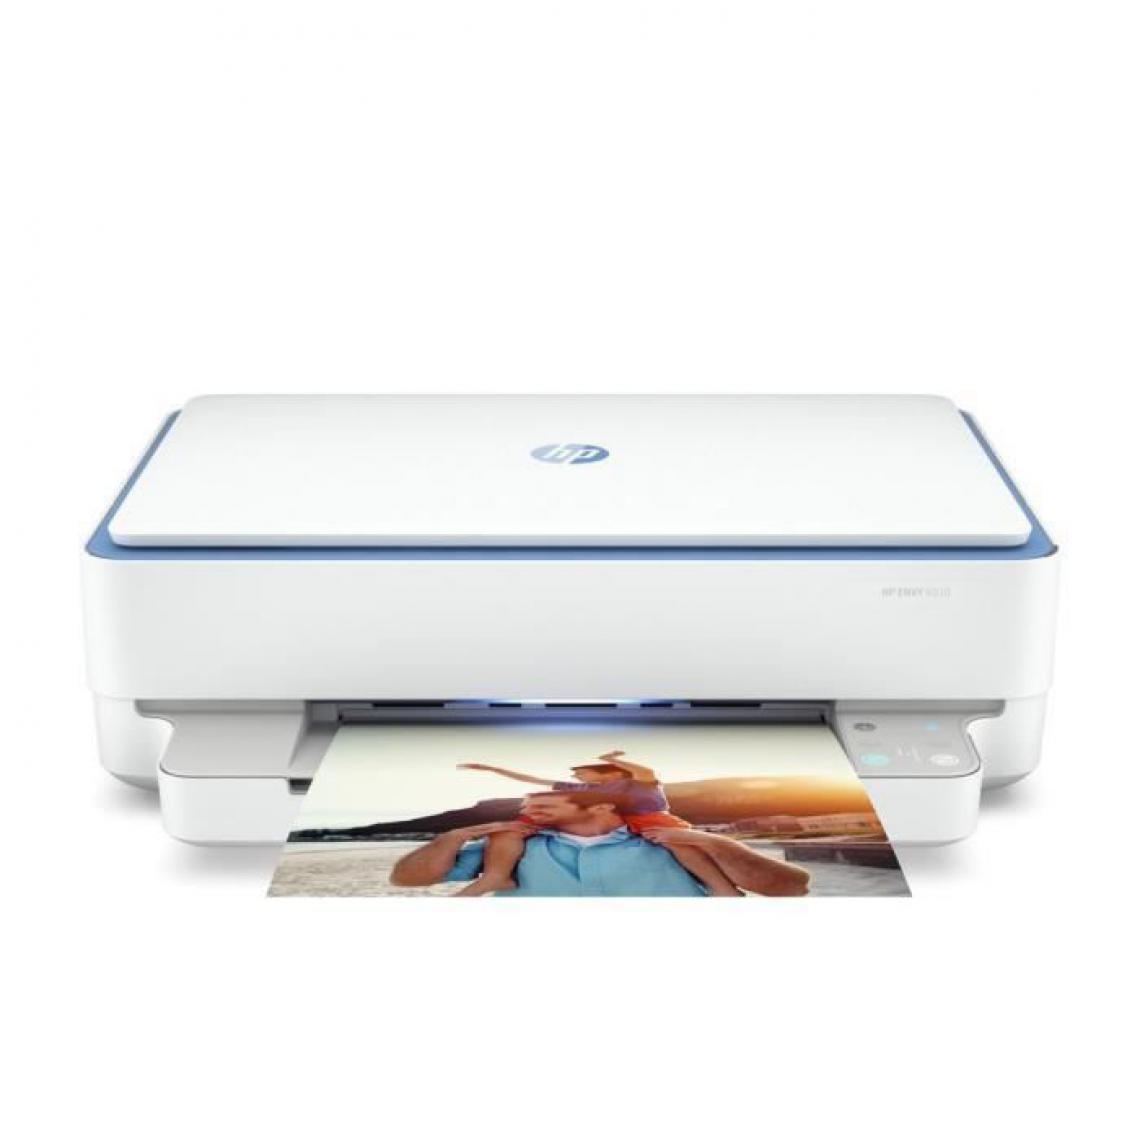 Hp - Imprimante 3 en 1 - HP Envy 6010 - Eligible Instant Ink - 2 mois dessai offerts inclus* - Imprimante Jet d'encre